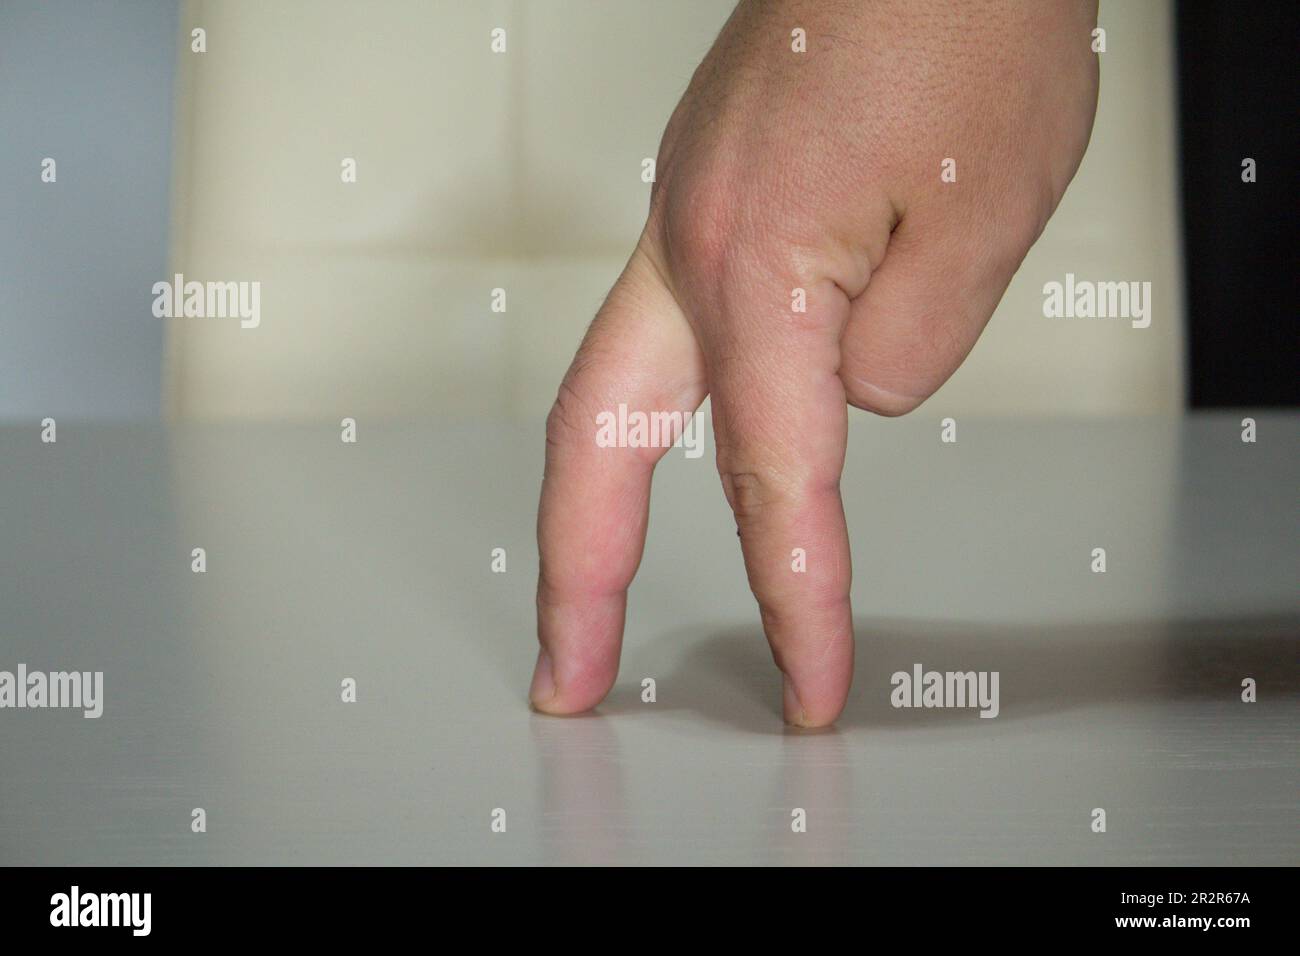 Image des doigts d'une main imitant la marche d'une personne. Banque D'Images